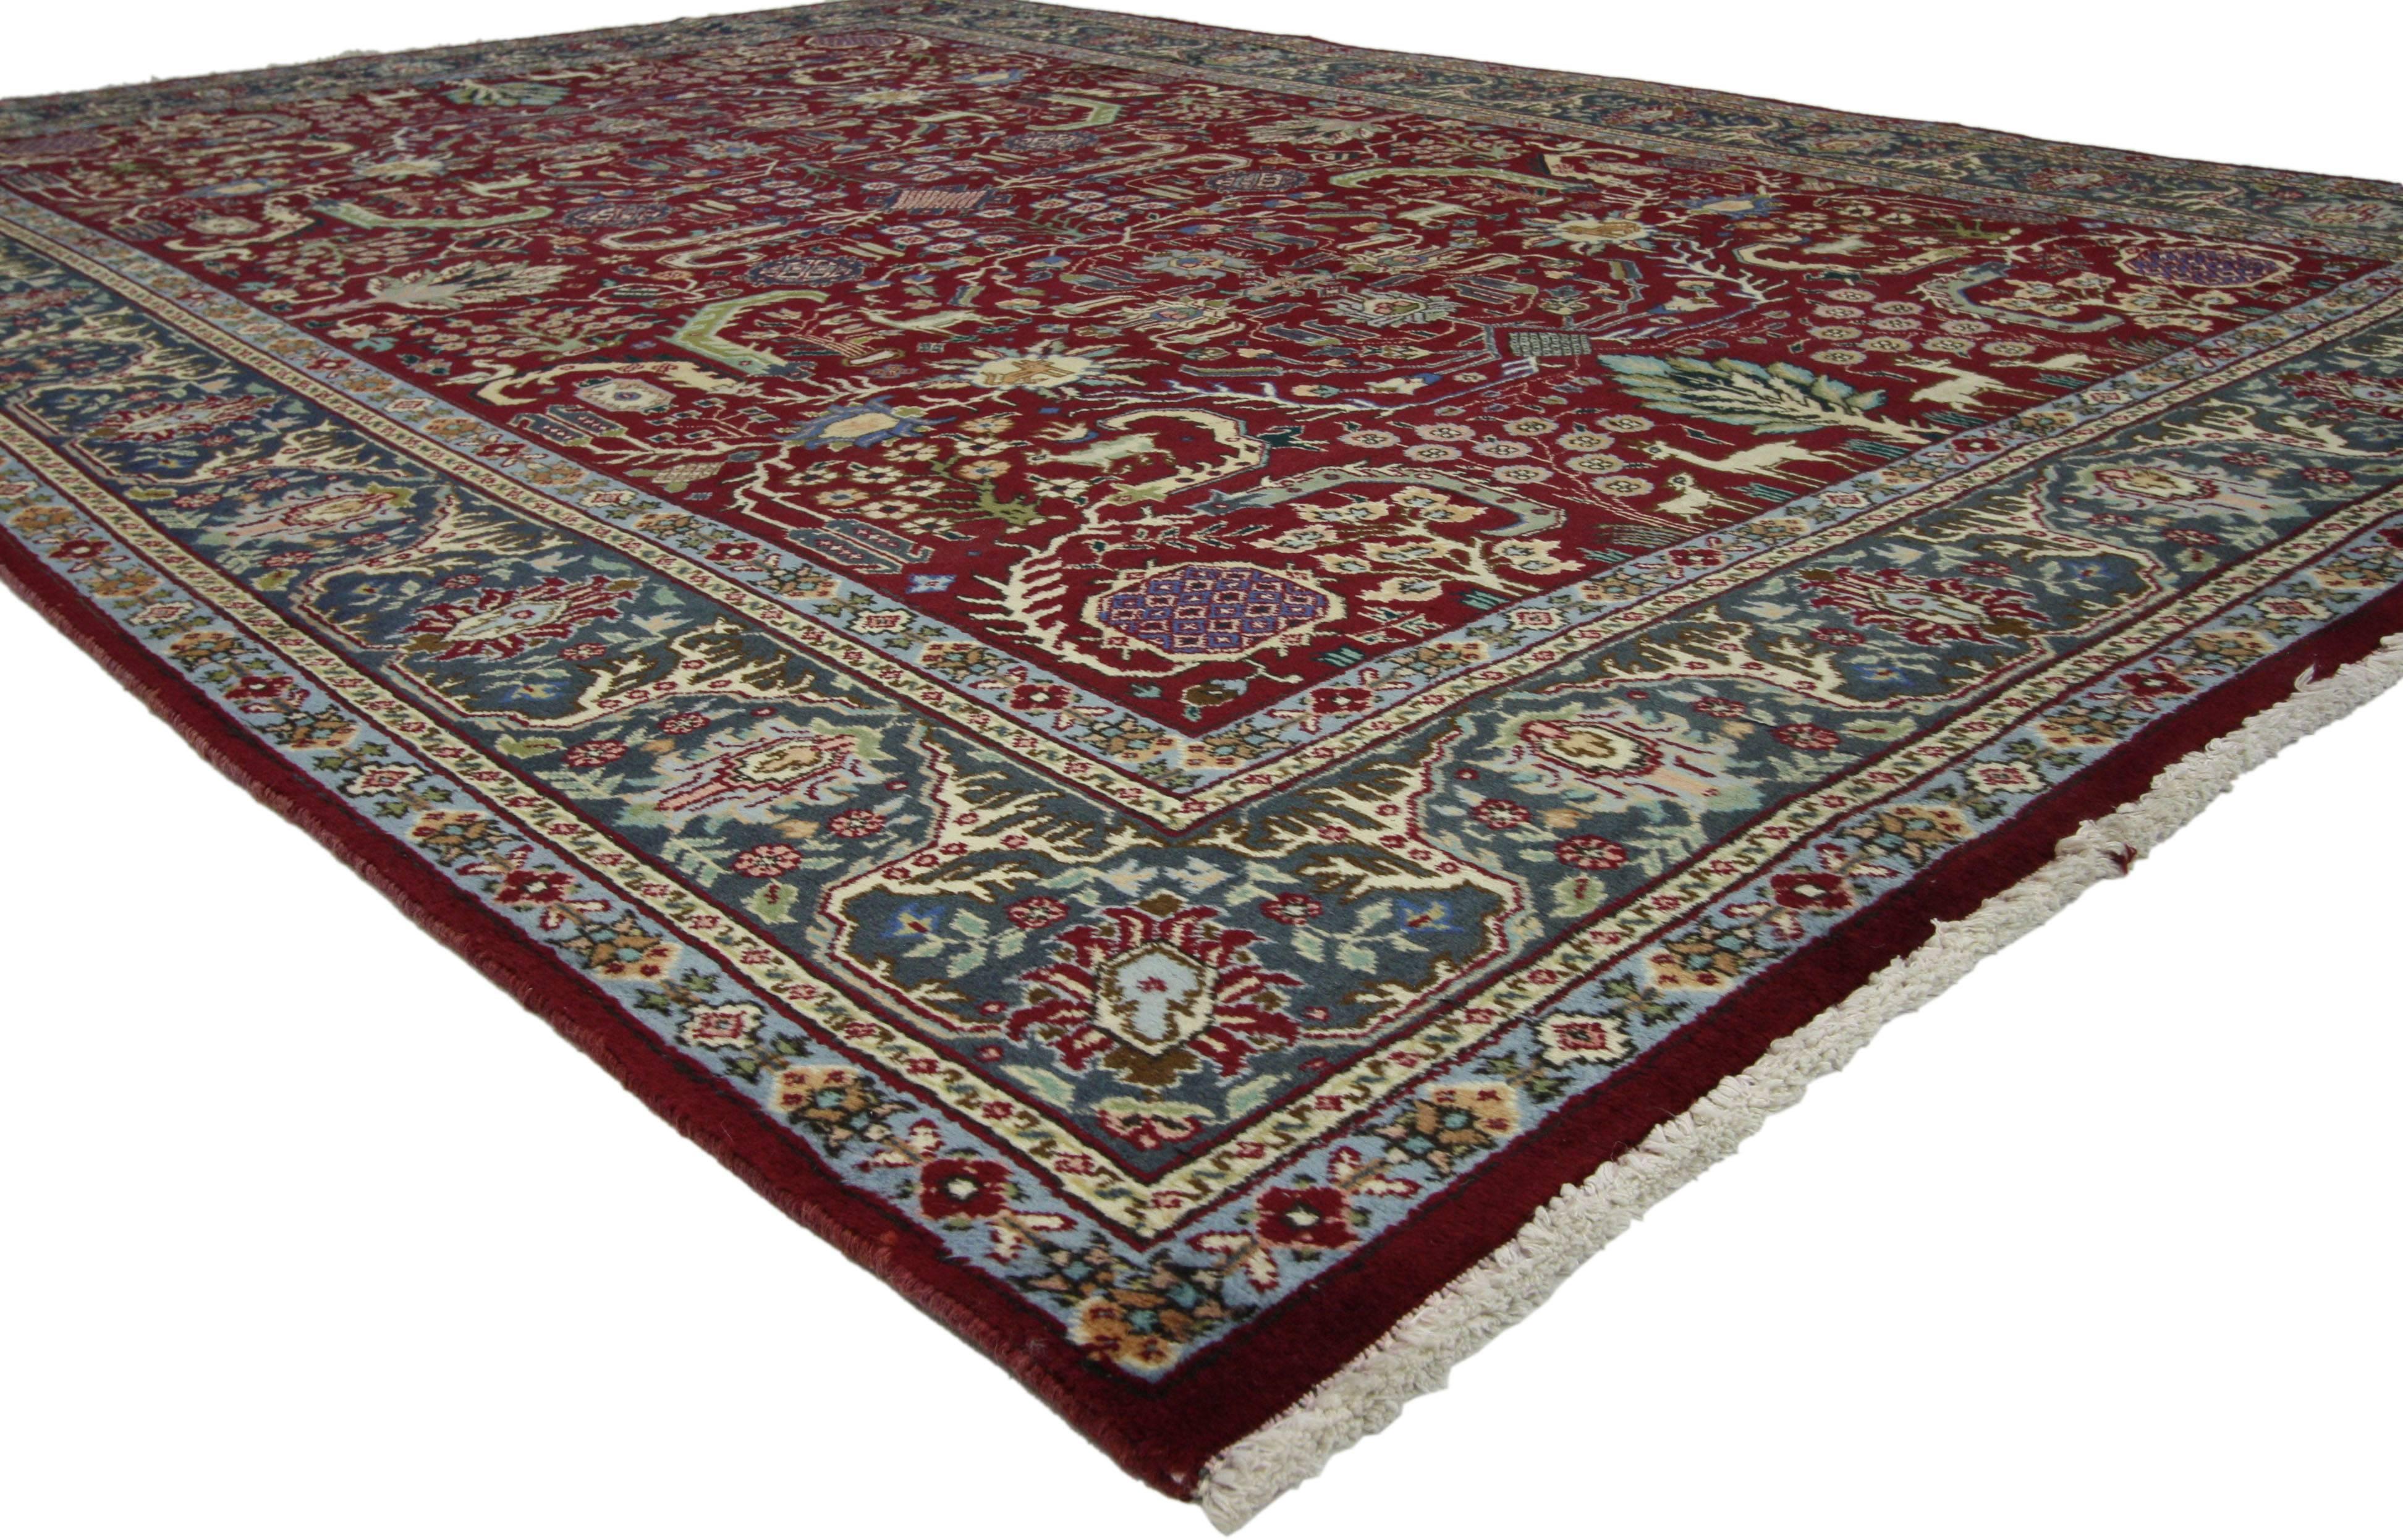 75511 Tapis Persan Vintage Tabriz de style colonial et fédéral traditionnel. Ce tapis persan vintage Tabriz en laine nouée à la main présente un motif en relief avec des motifs géométriques et des animaux entourés d'une bordure classique, créant un